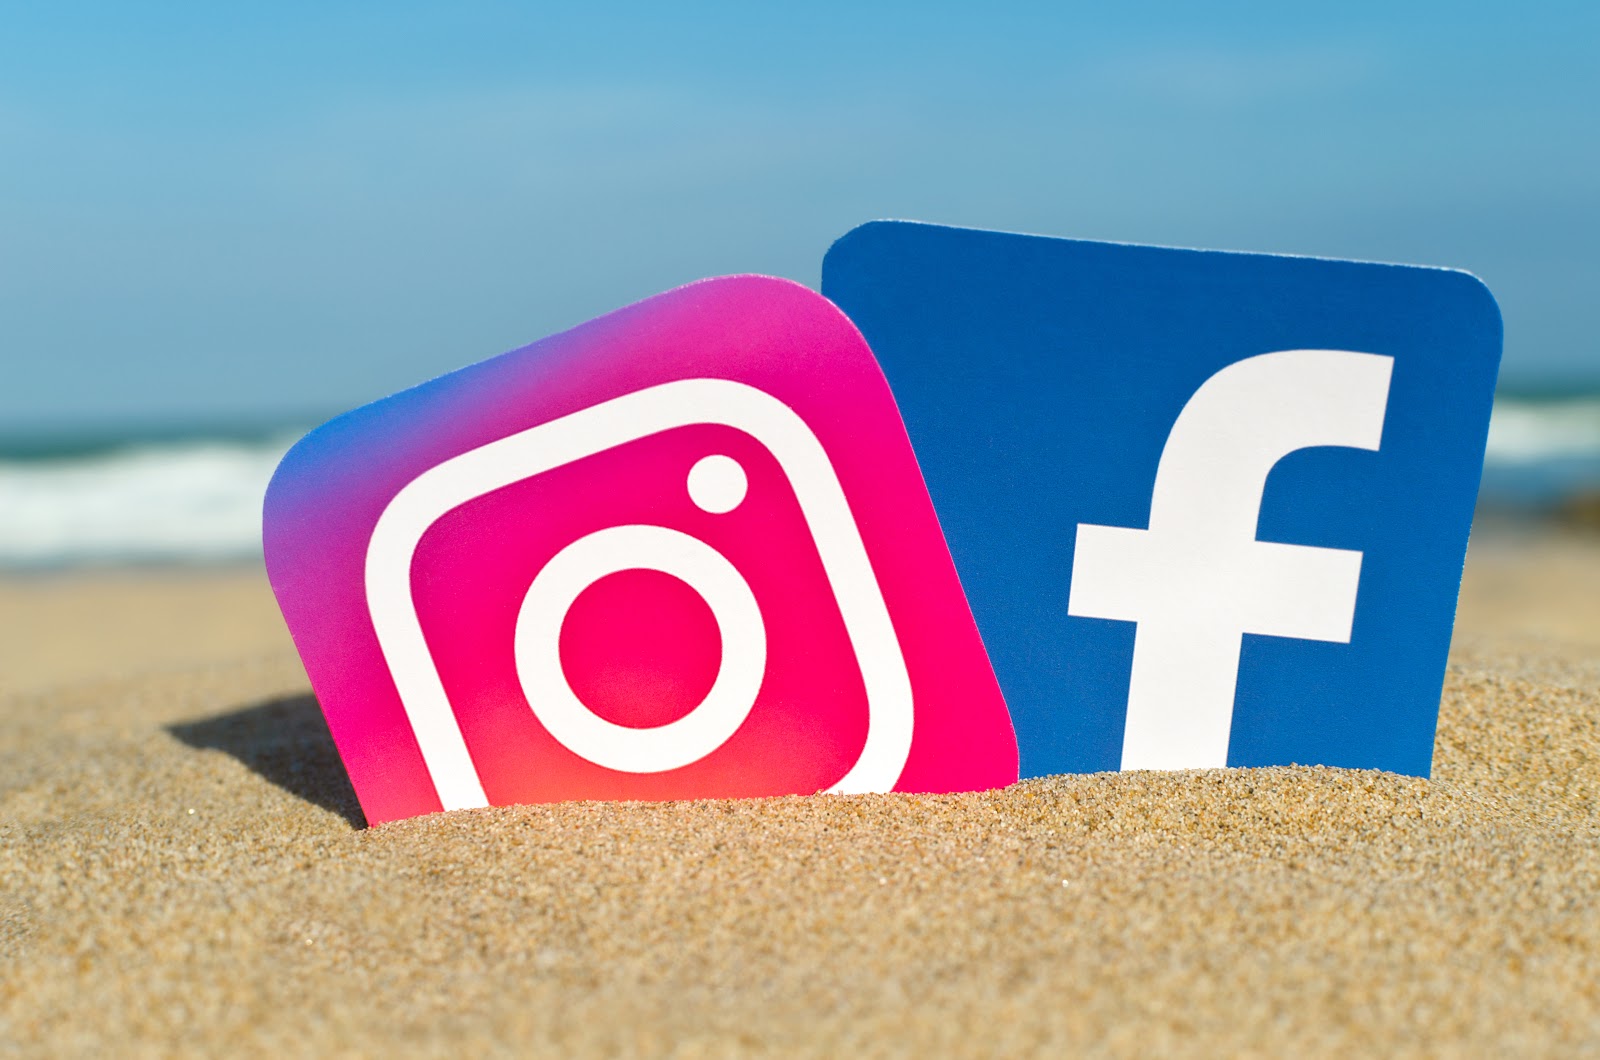 Đổi font chữ up Instagram và Facebook: Với tính năng đổi font chữ up Instagram và Facebook, người dùng có thể tạo ra những bức ảnh và story độc đáo hơn. Tính năng này cho phép tùy chỉnh font chữ cùng với các hiệu ứng để tạo nên những tấm ảnh có phong cách riêng. Hãy truy cập Instagram và Facebook ngay bây giờ để trải nghiệm.